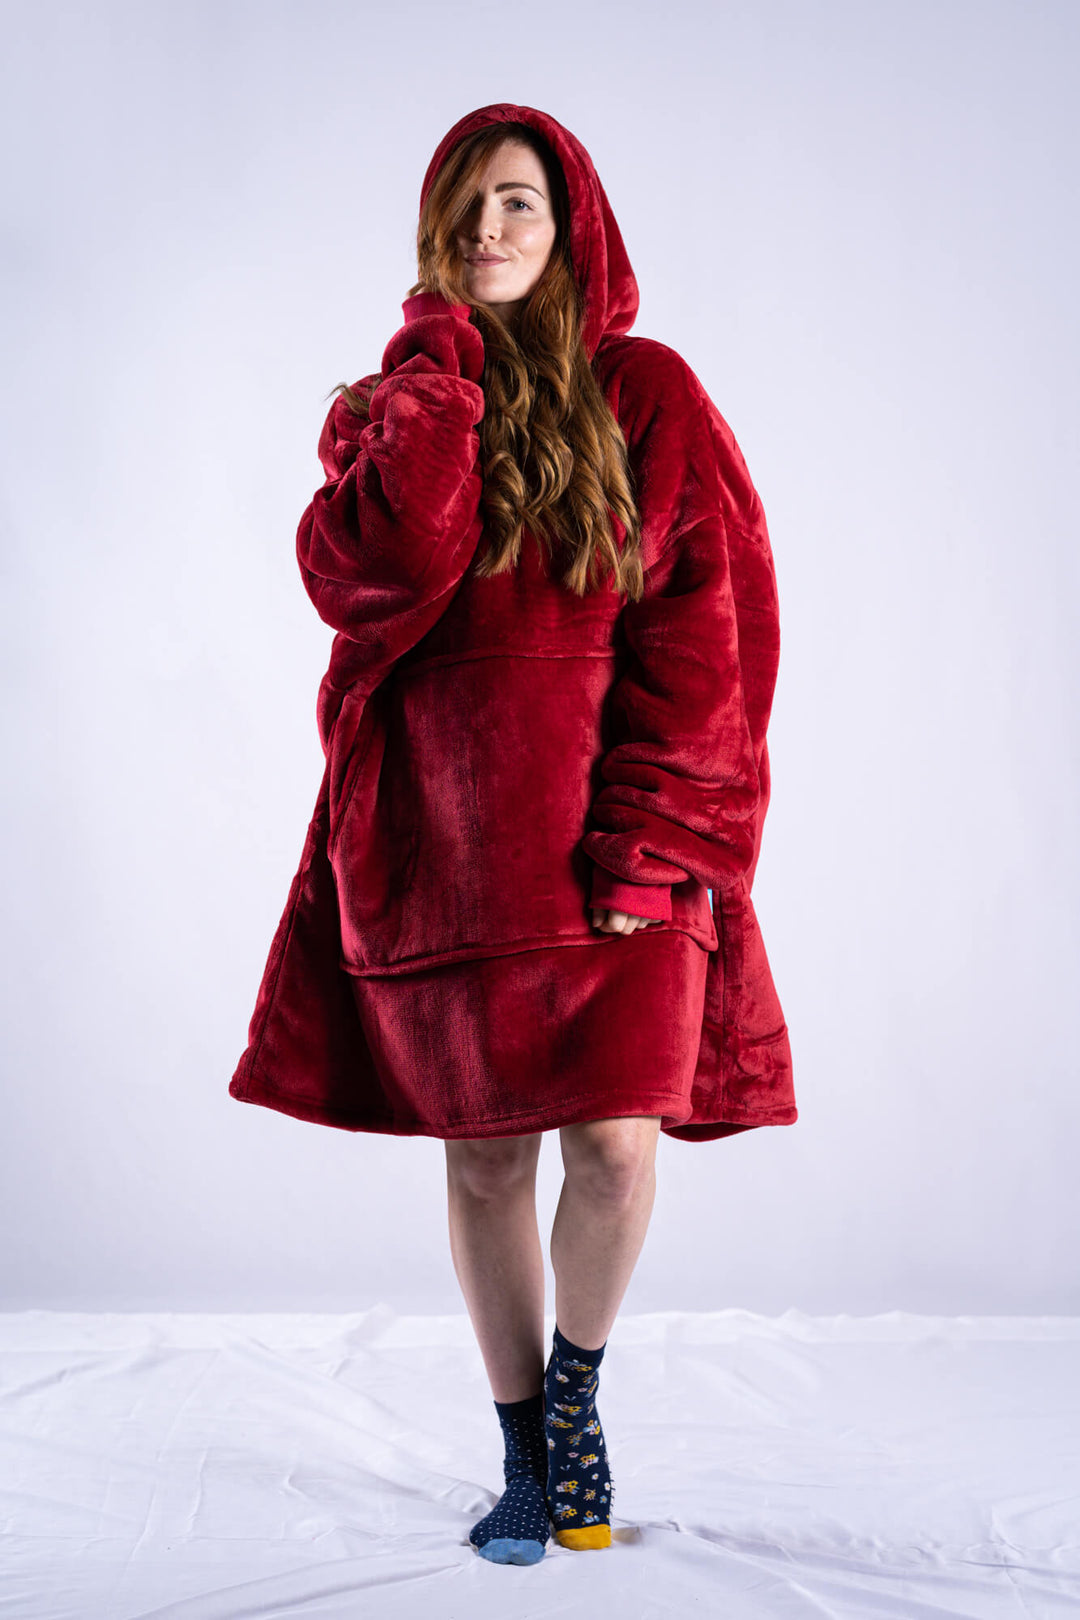 Original Ony Hoodie Blanket - Red - It's Ony